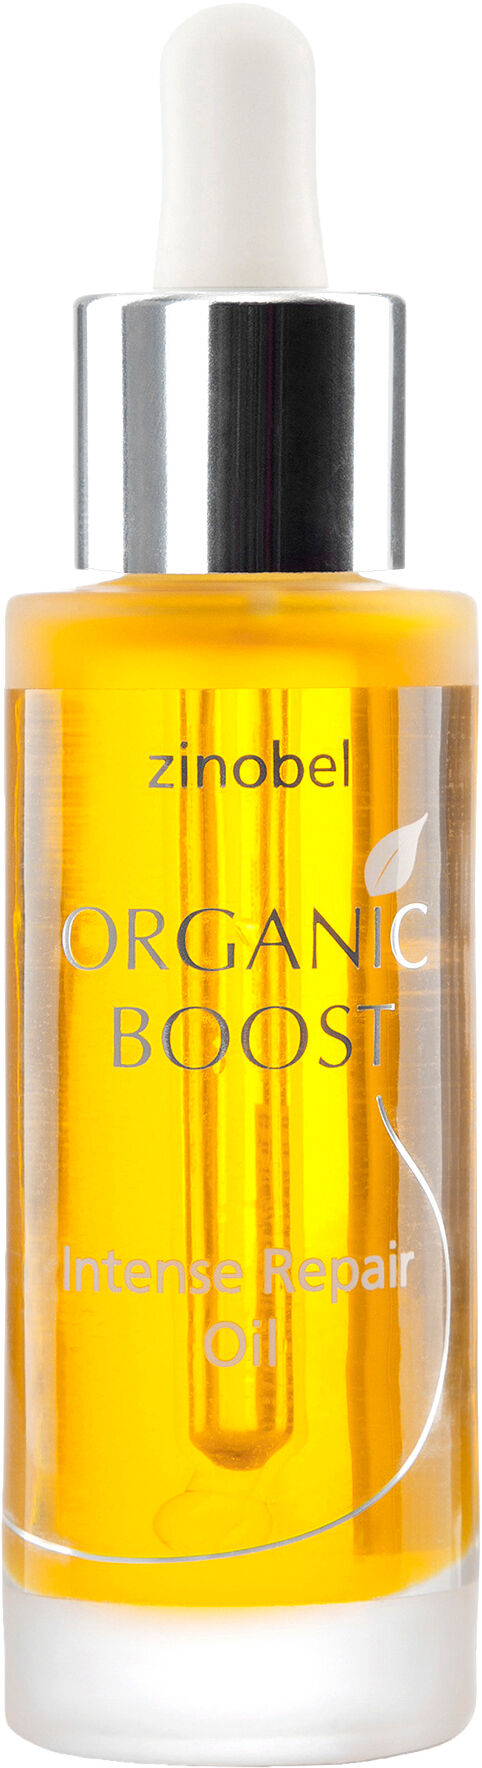 Zinobel Organic Boost Intense Repair oil - 30 ml